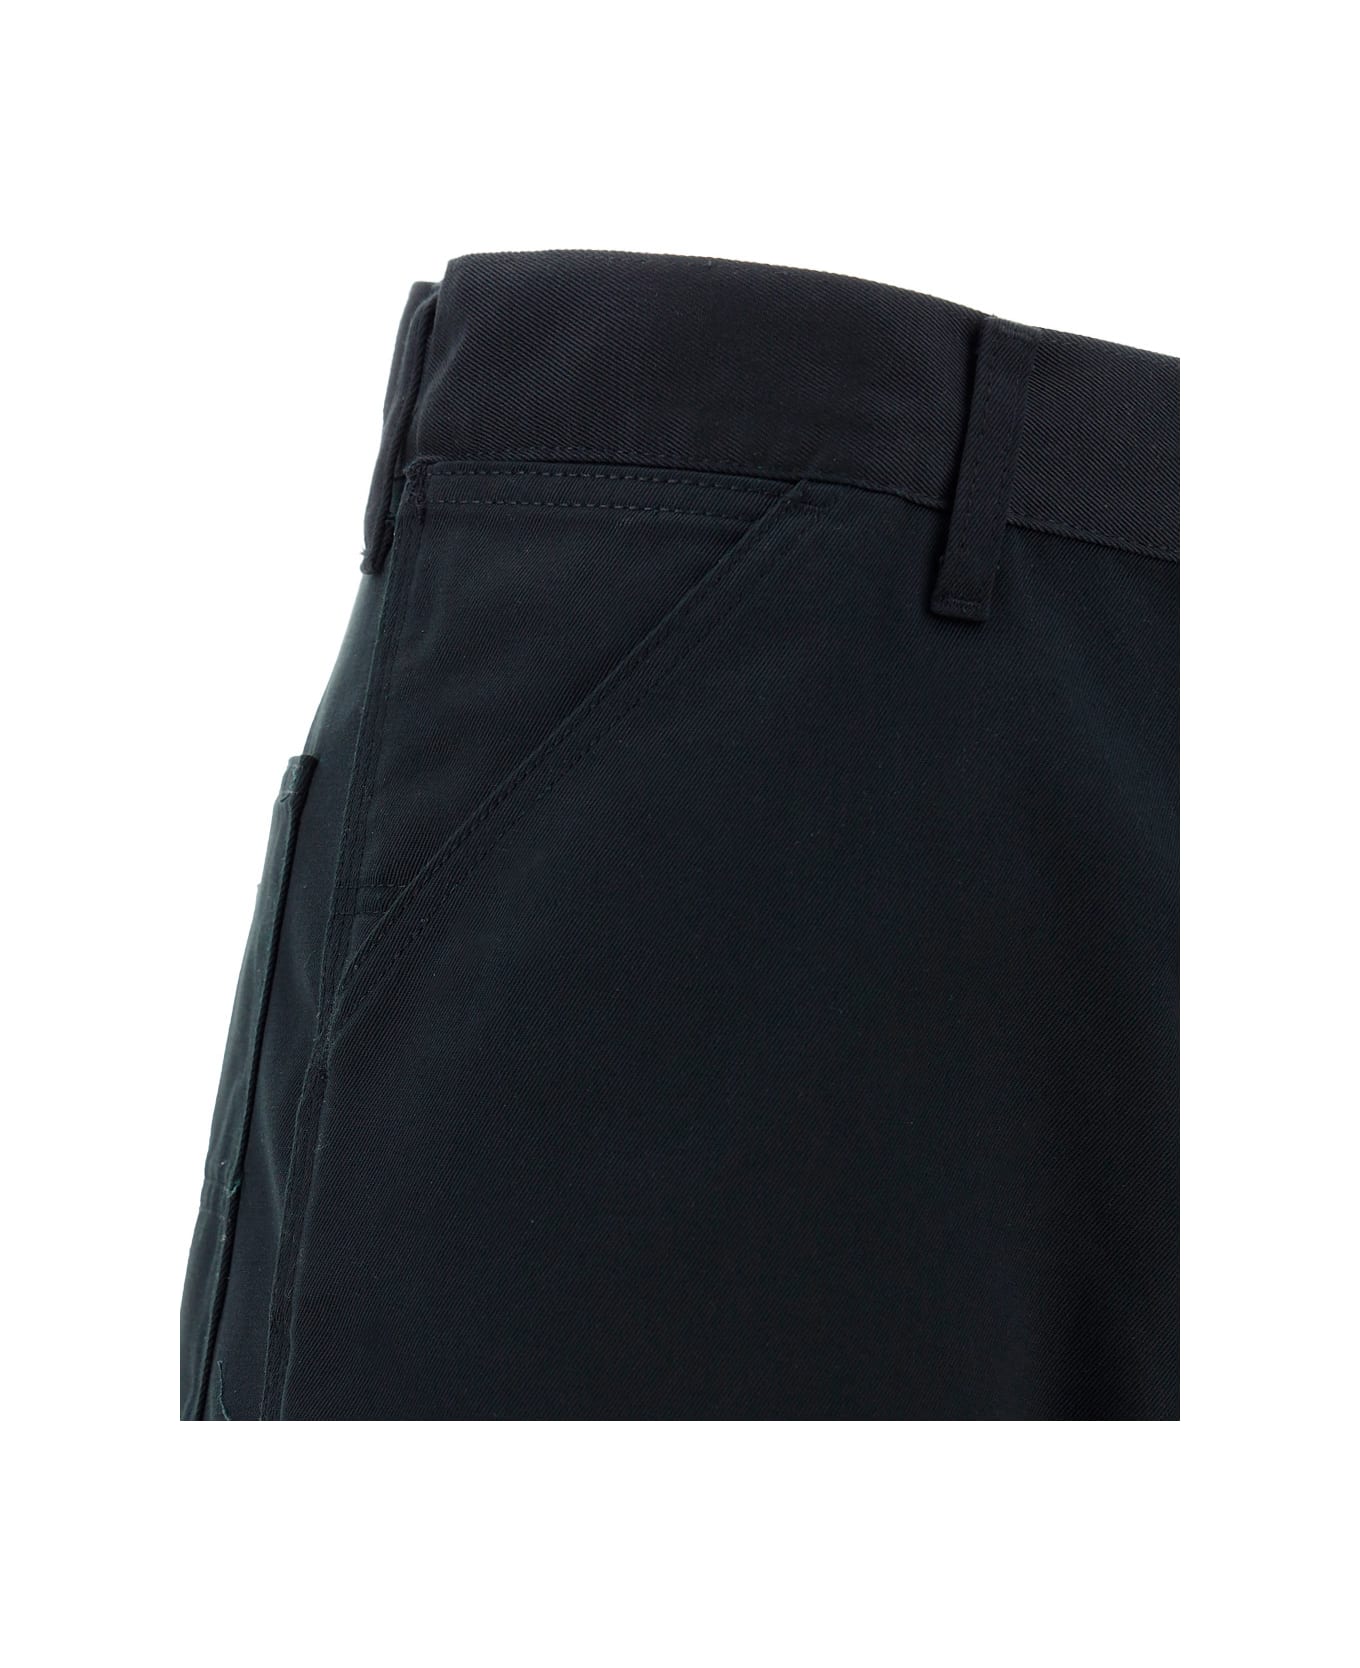 Carhartt Pants - Black Rinsed